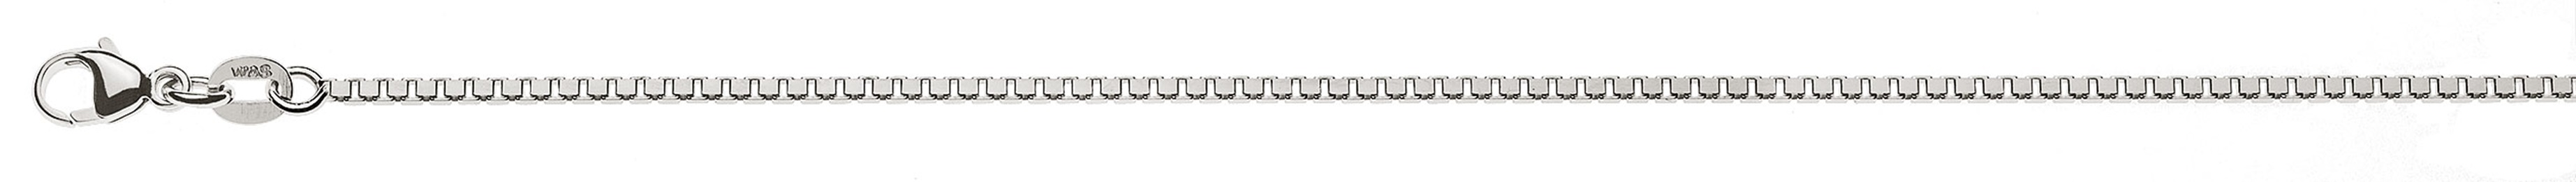 AURONOS Prestige Halskette Weissgold 18K Venezianerkette diamantiert 60cm 1.4mm